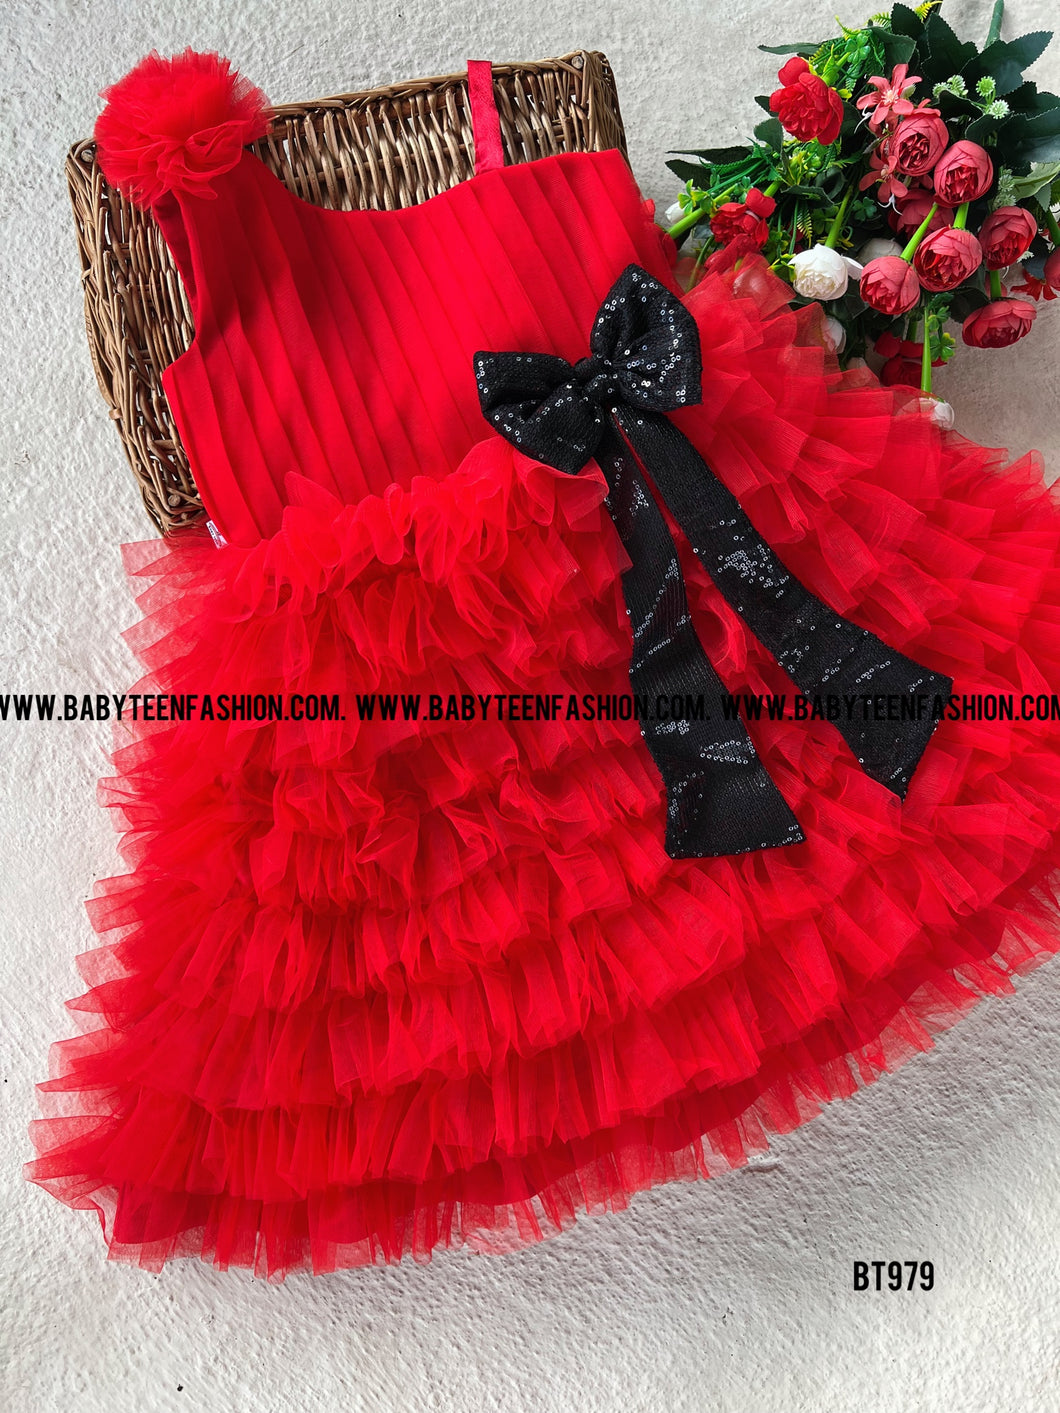 BT979 Scarlet Charisma Dress - A Vivid Embrace of Celebration